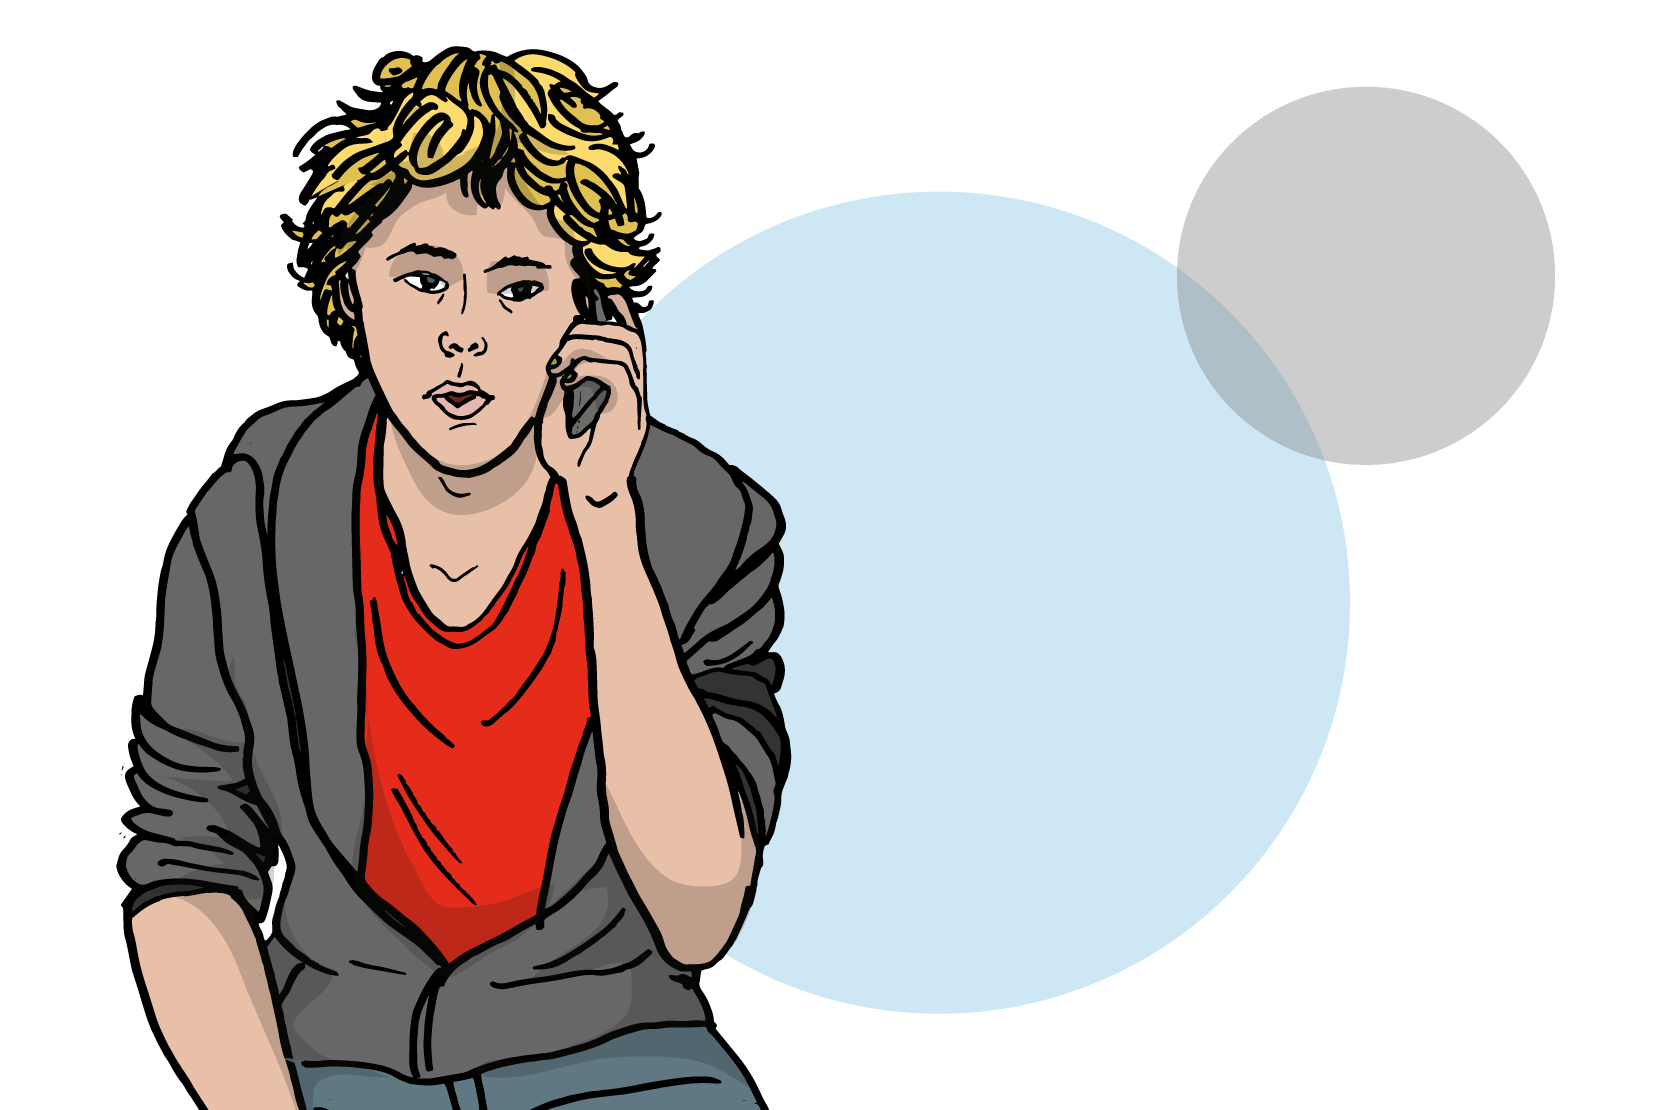 En ung person sitter och pratar i telefon. 